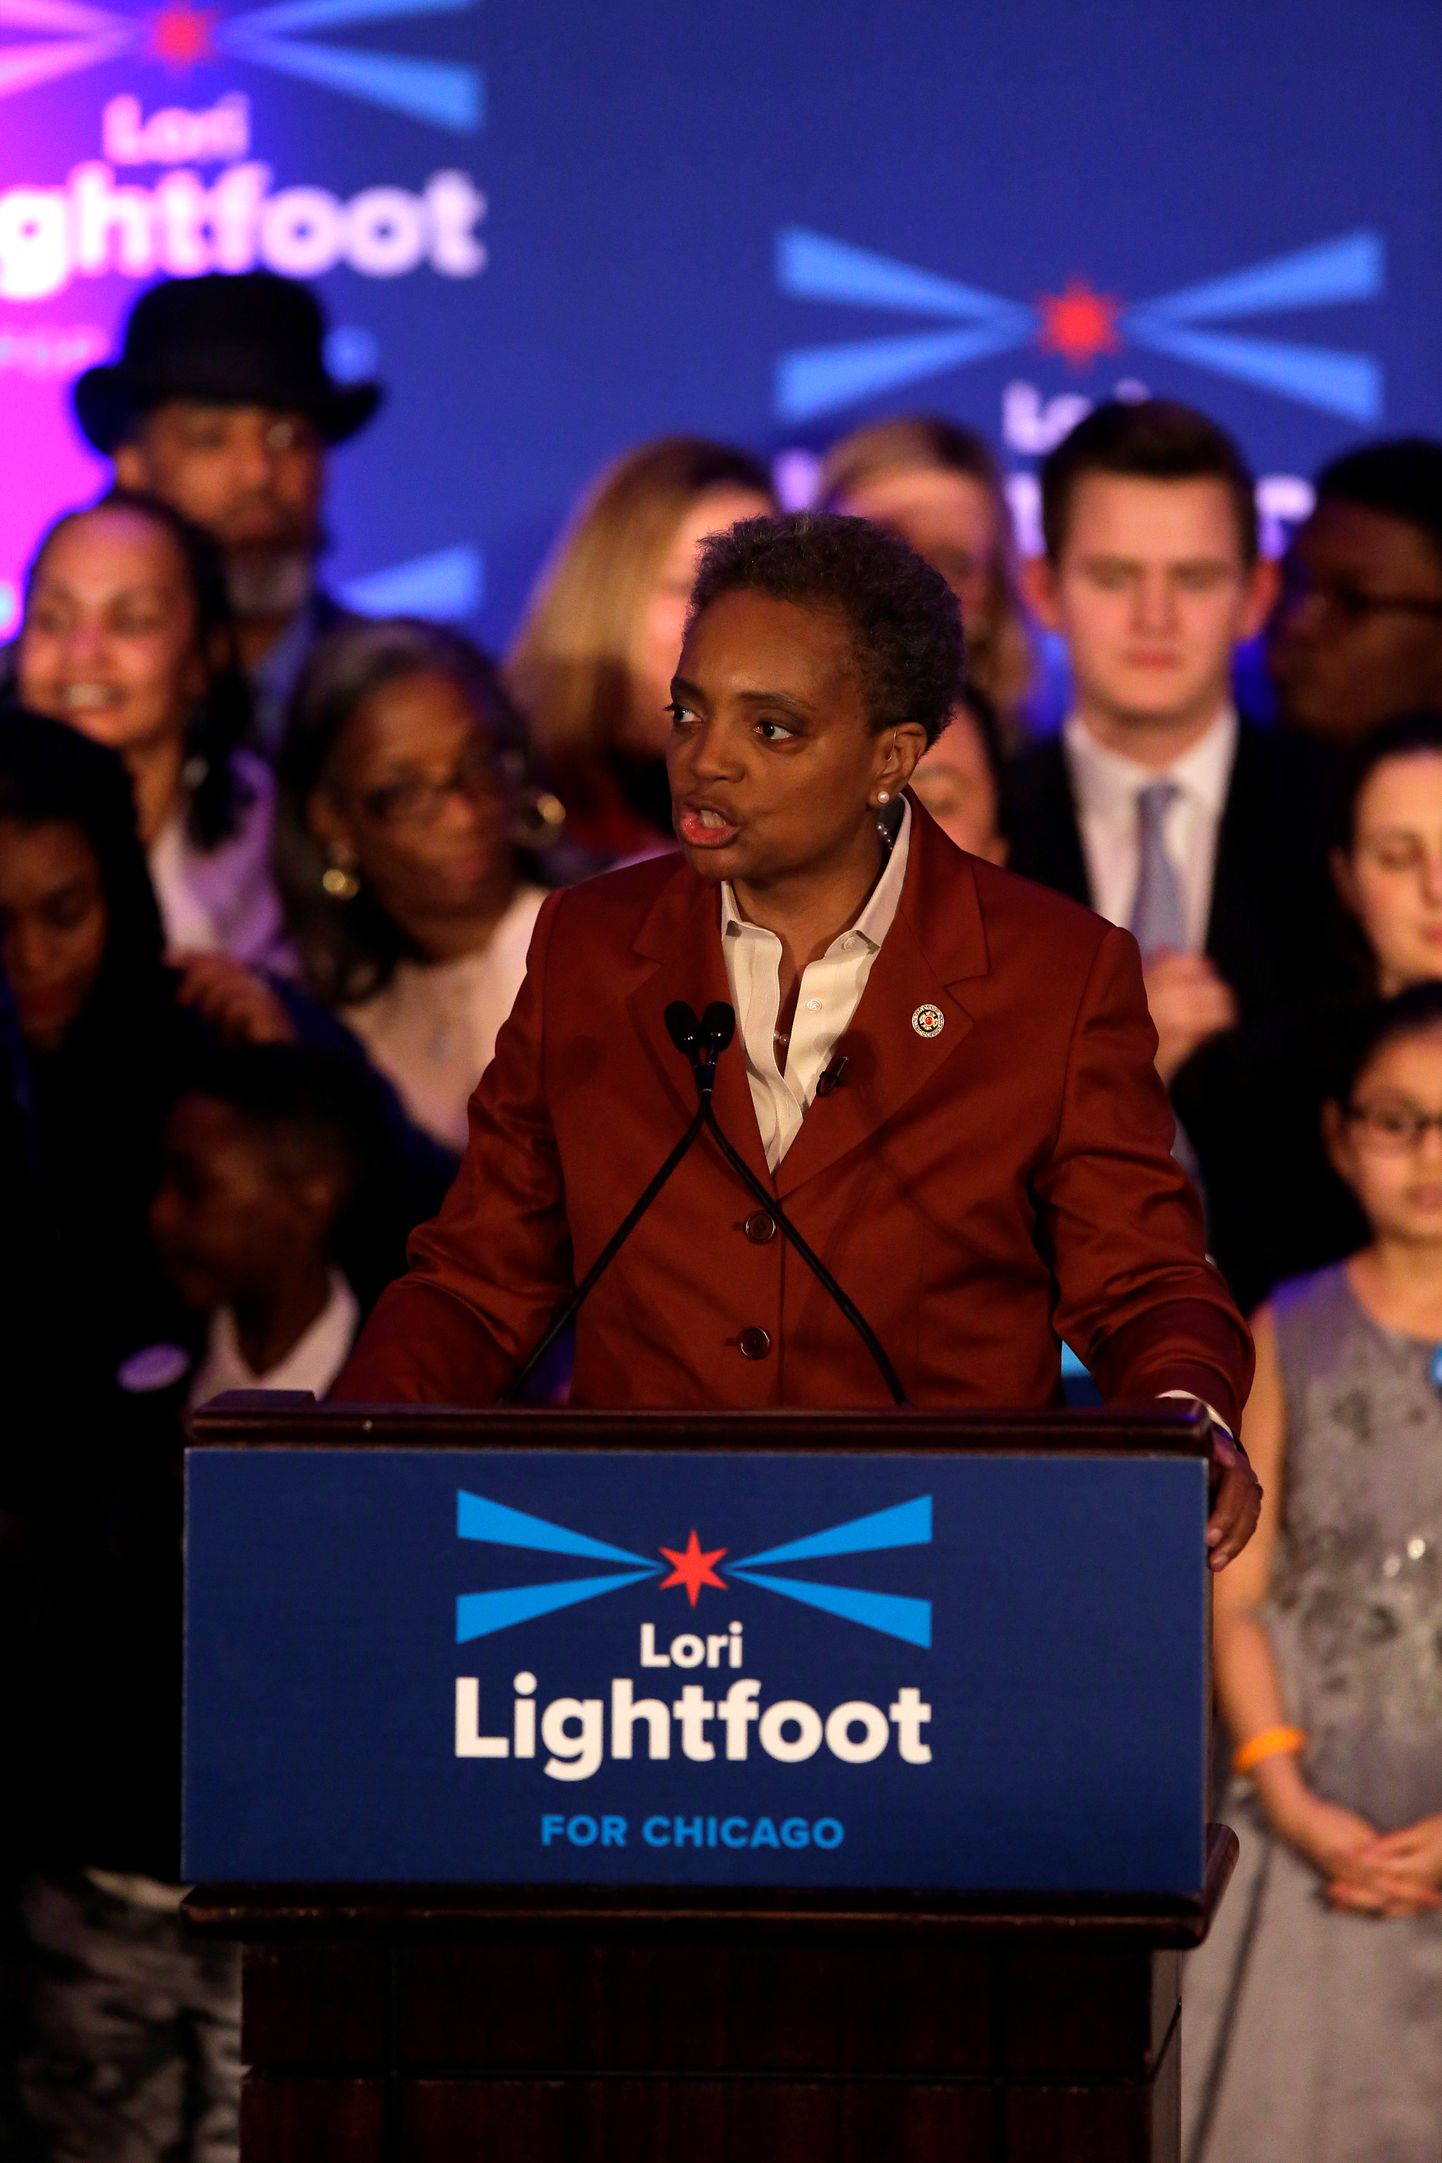 USA suurlinna Chicago linnapeaks valitud Lori Lightfoot teisipäeva hilisõhtul oma toetajatele kõnet pidamas.